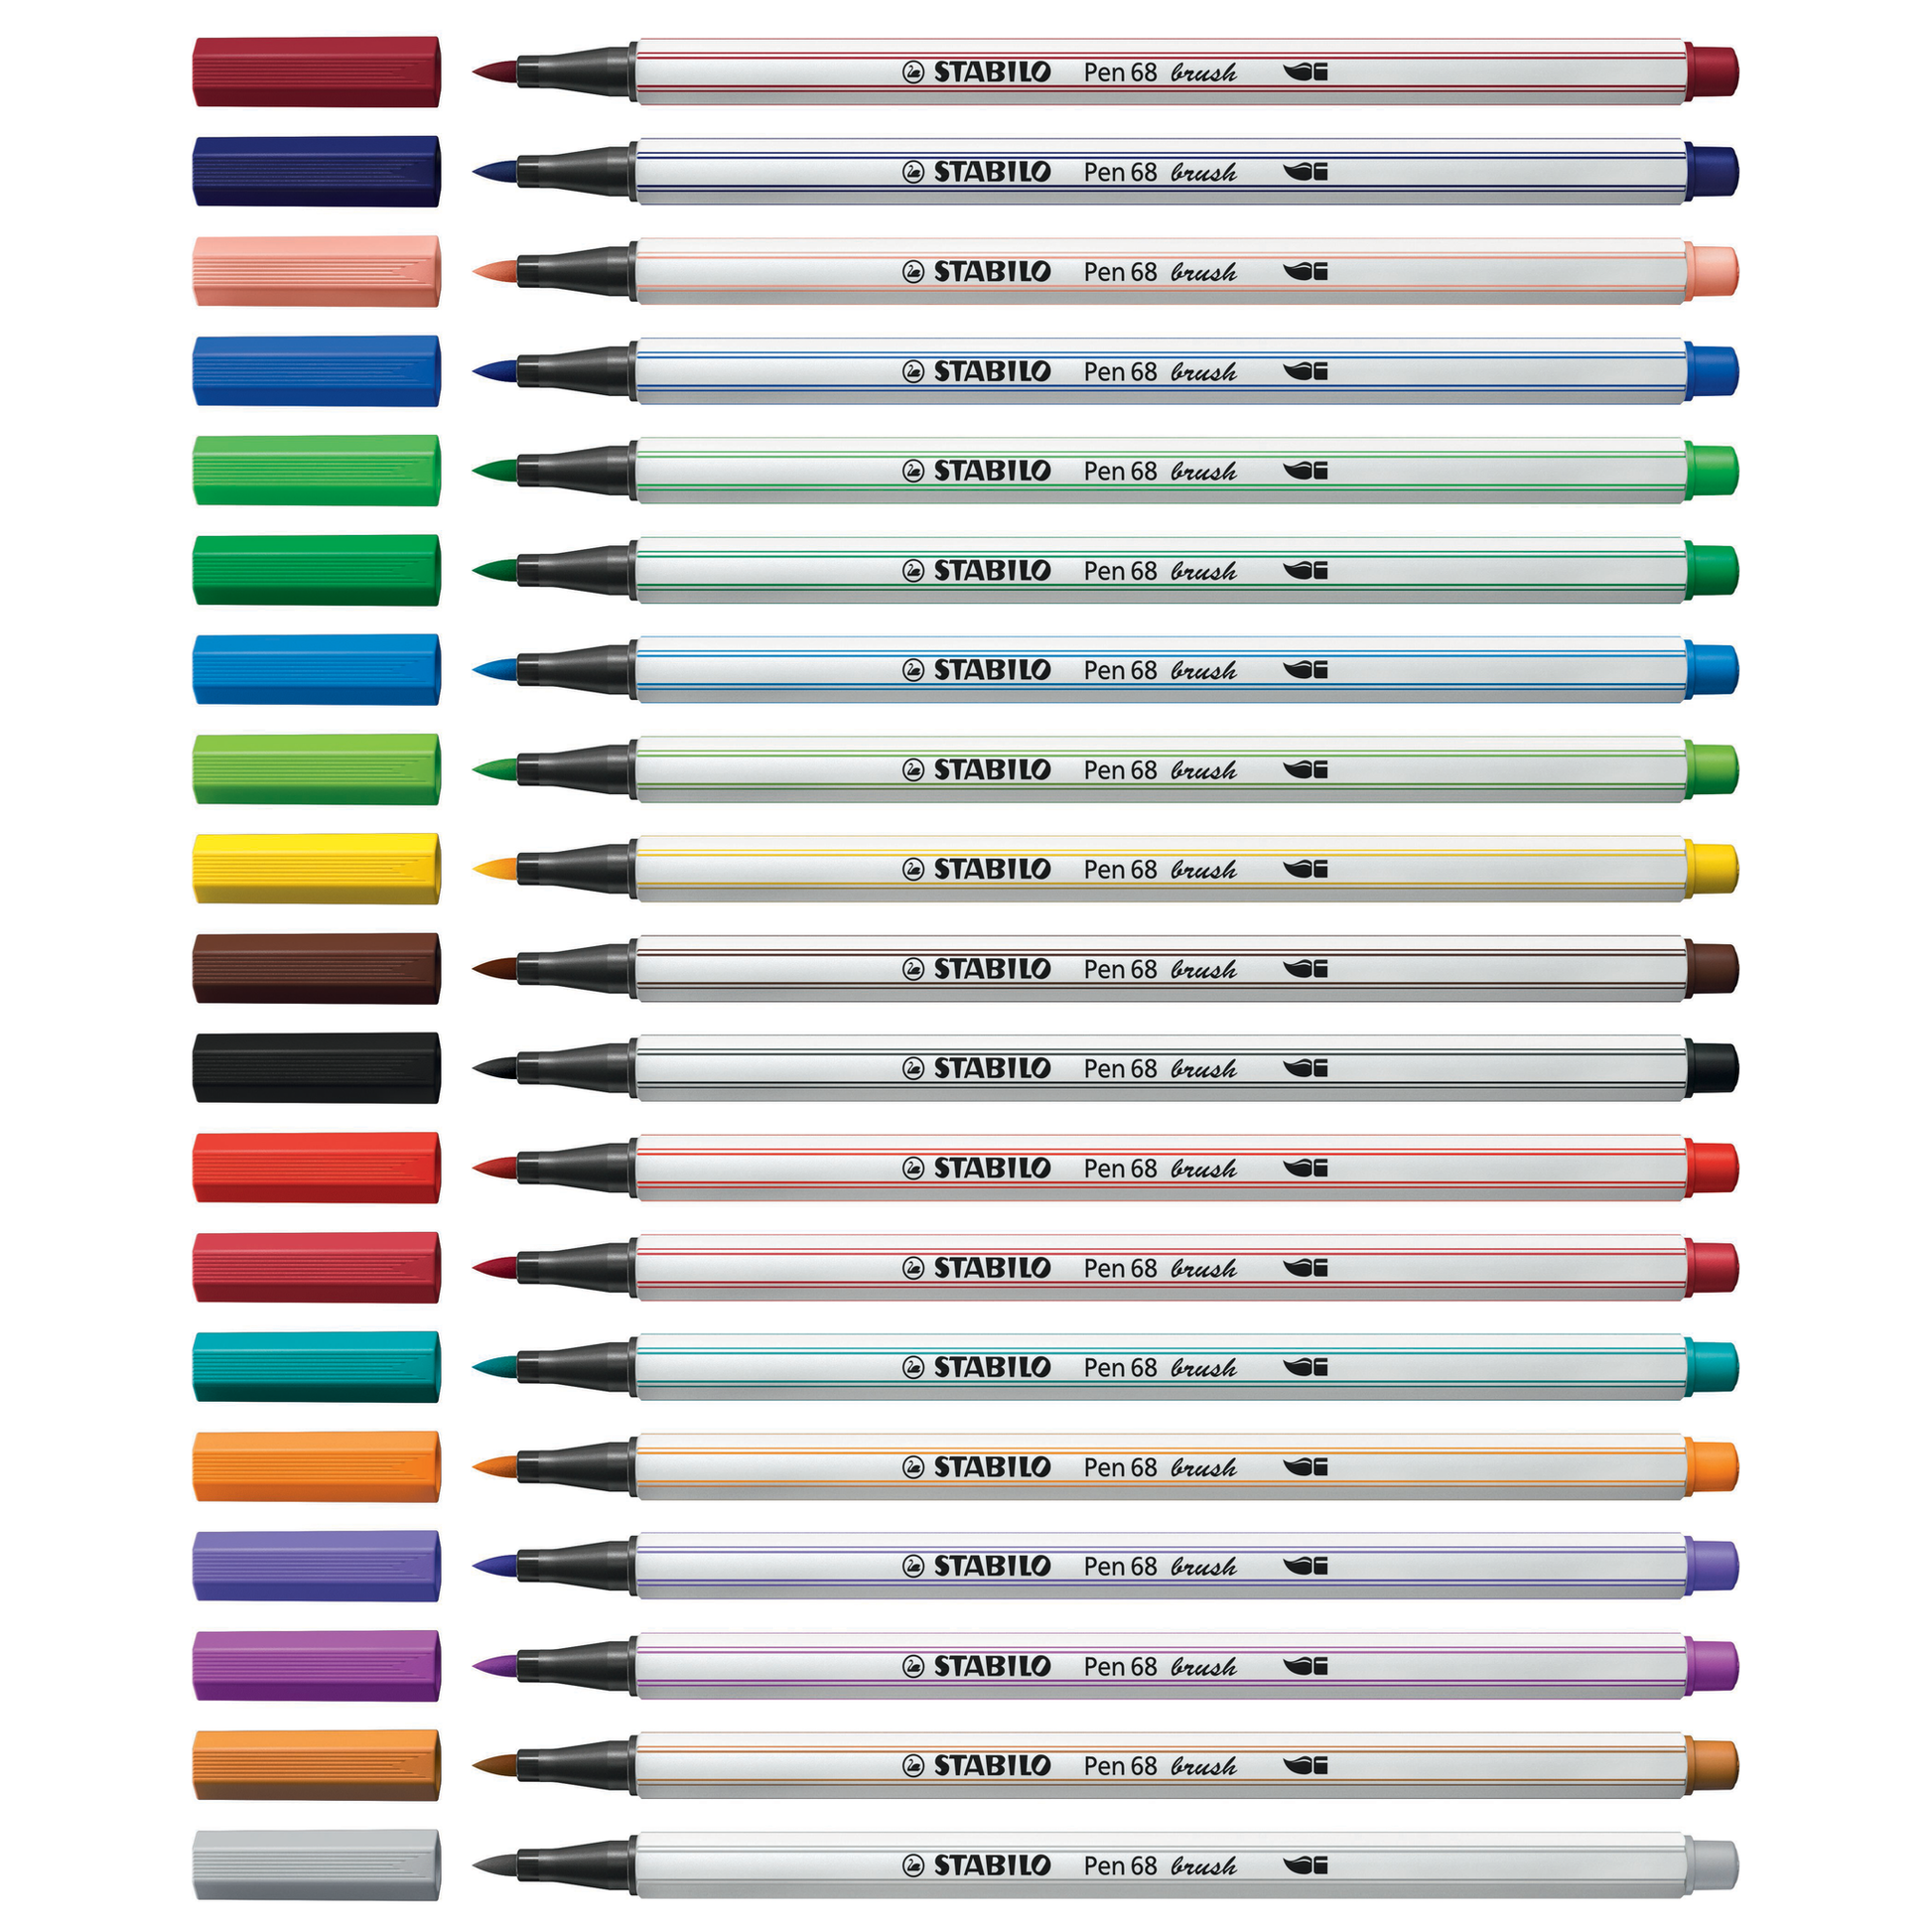 Stabilo Pen 68 Brush Marker – Chrysler Museum of Art